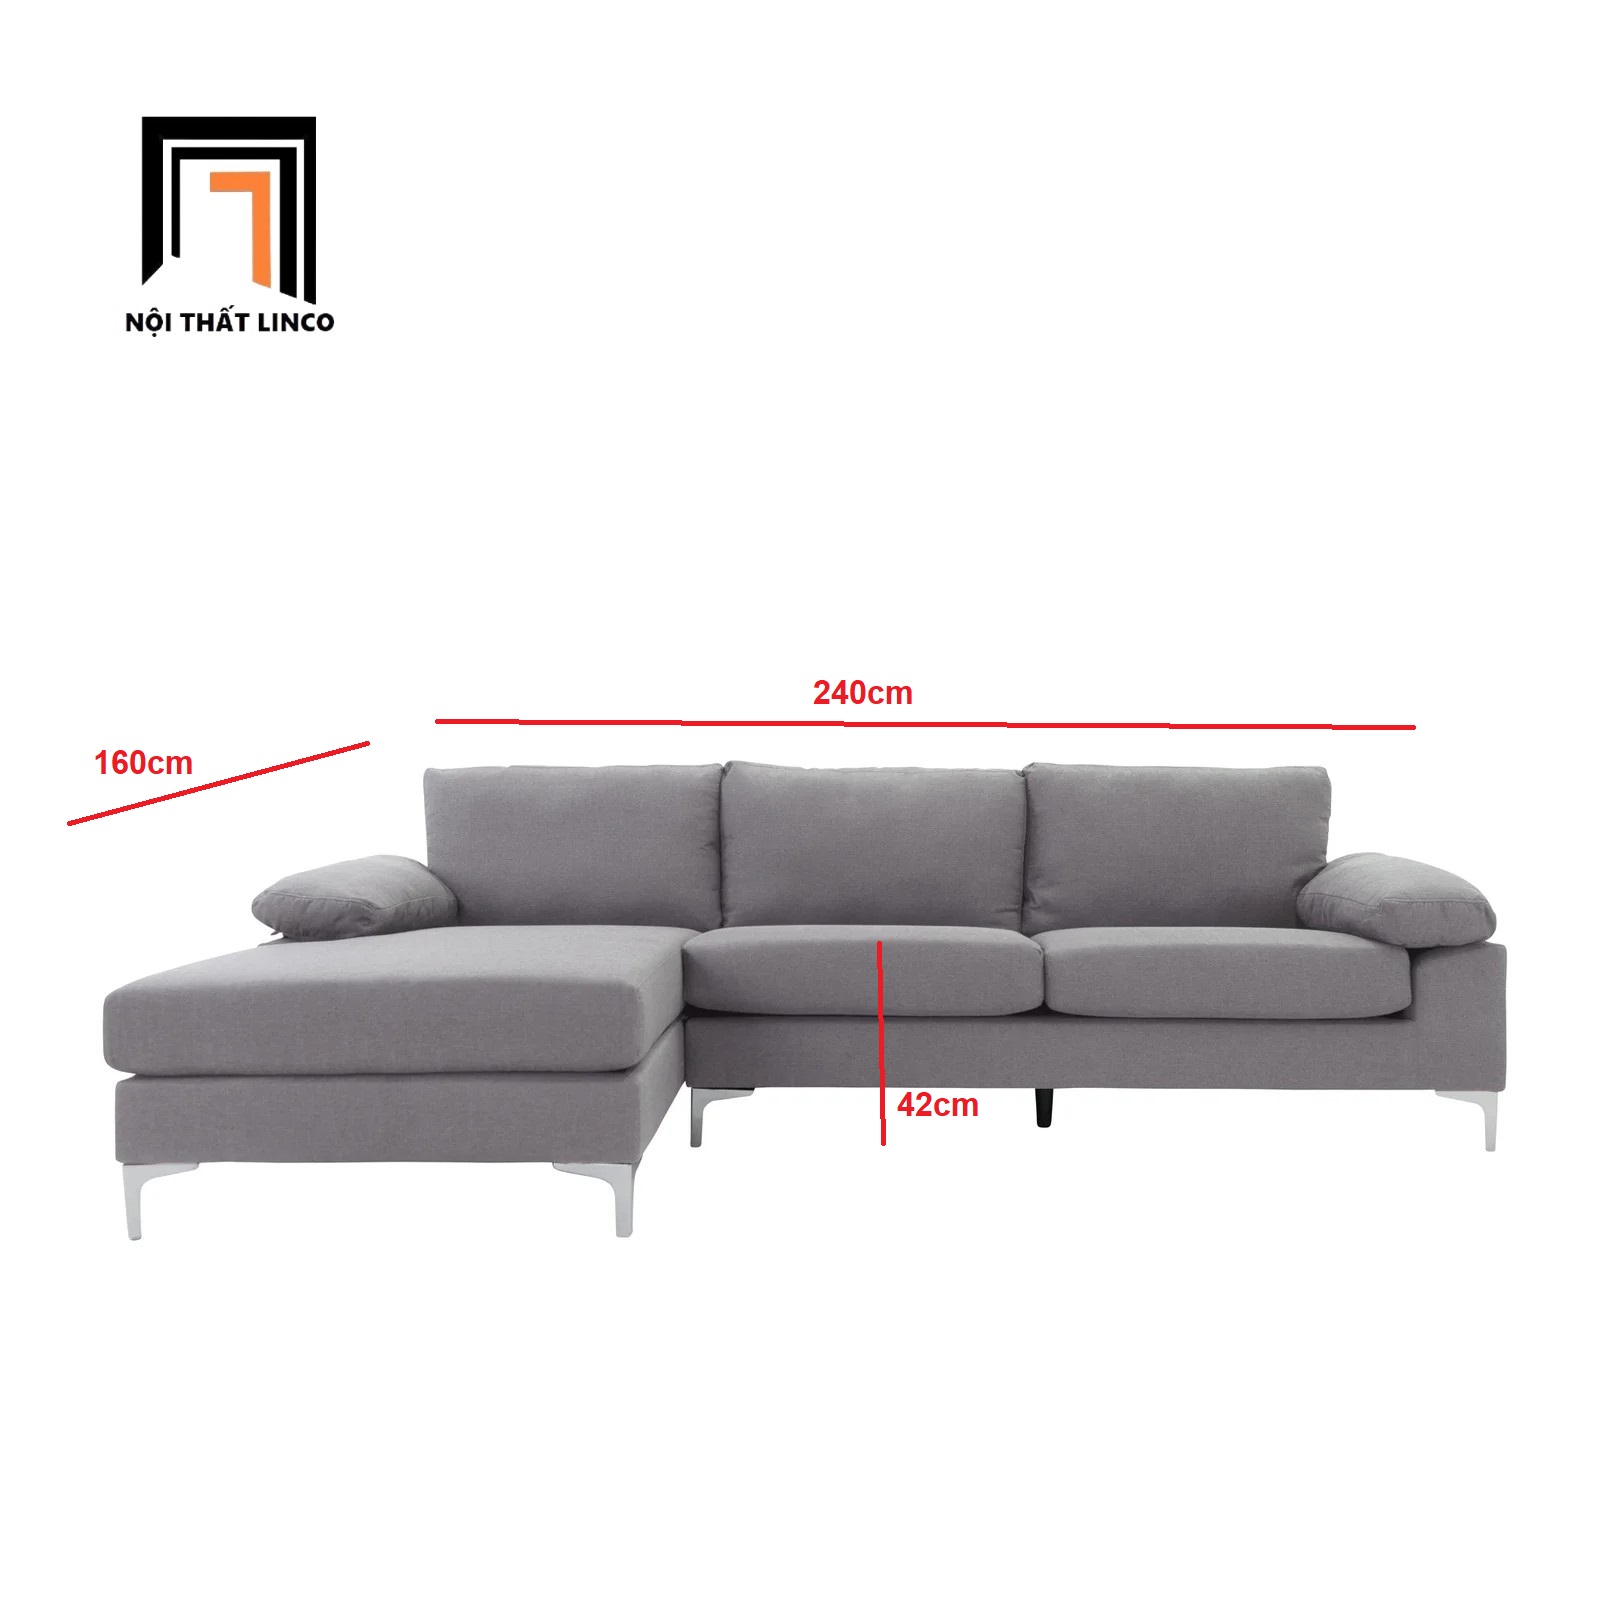 Bộ ghế sofa góc L 2m4 x 1m6 GT4 Ettal cho phòng khách sang trọng